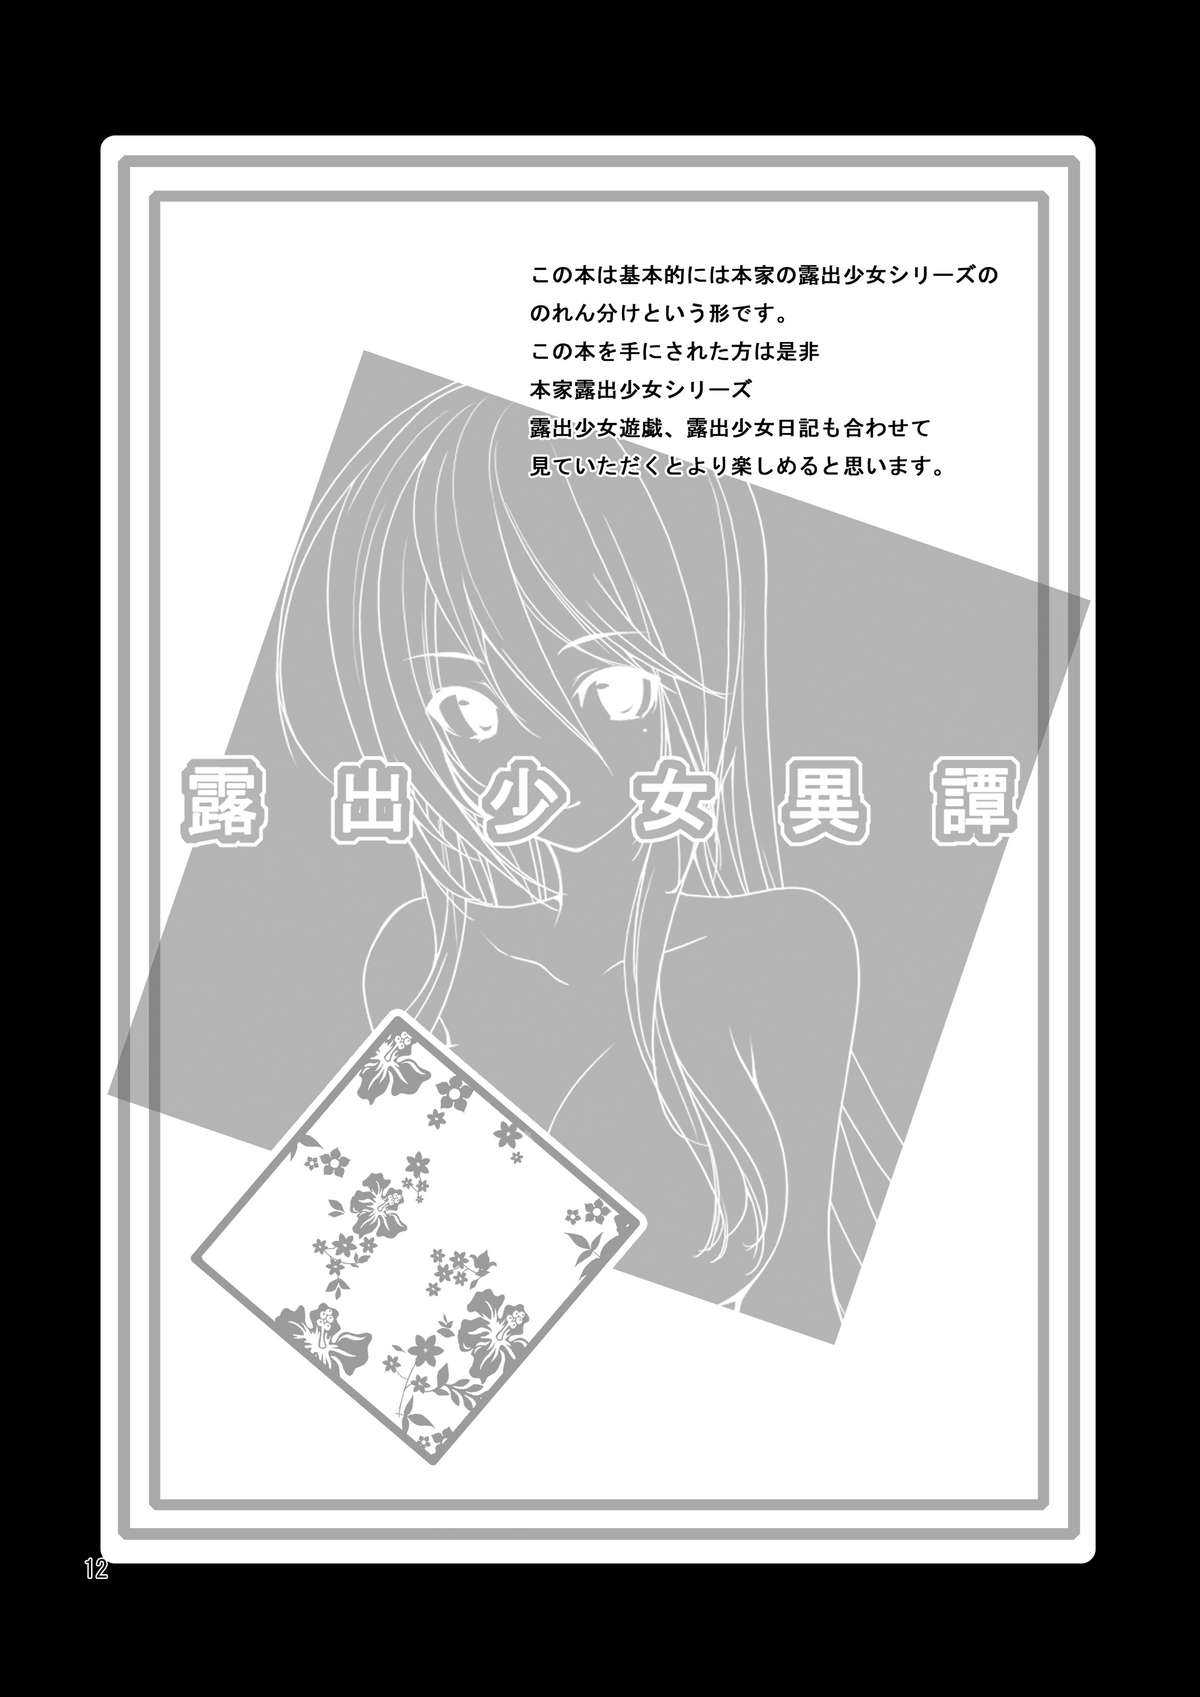 [Rokumonsen] Exhibitionist Girl Heresy Ch.1 (English) (Munyu) (SC53) [Rokumonsen (Tamahagane)] Roshutsu Shoujo Itan [Digital]